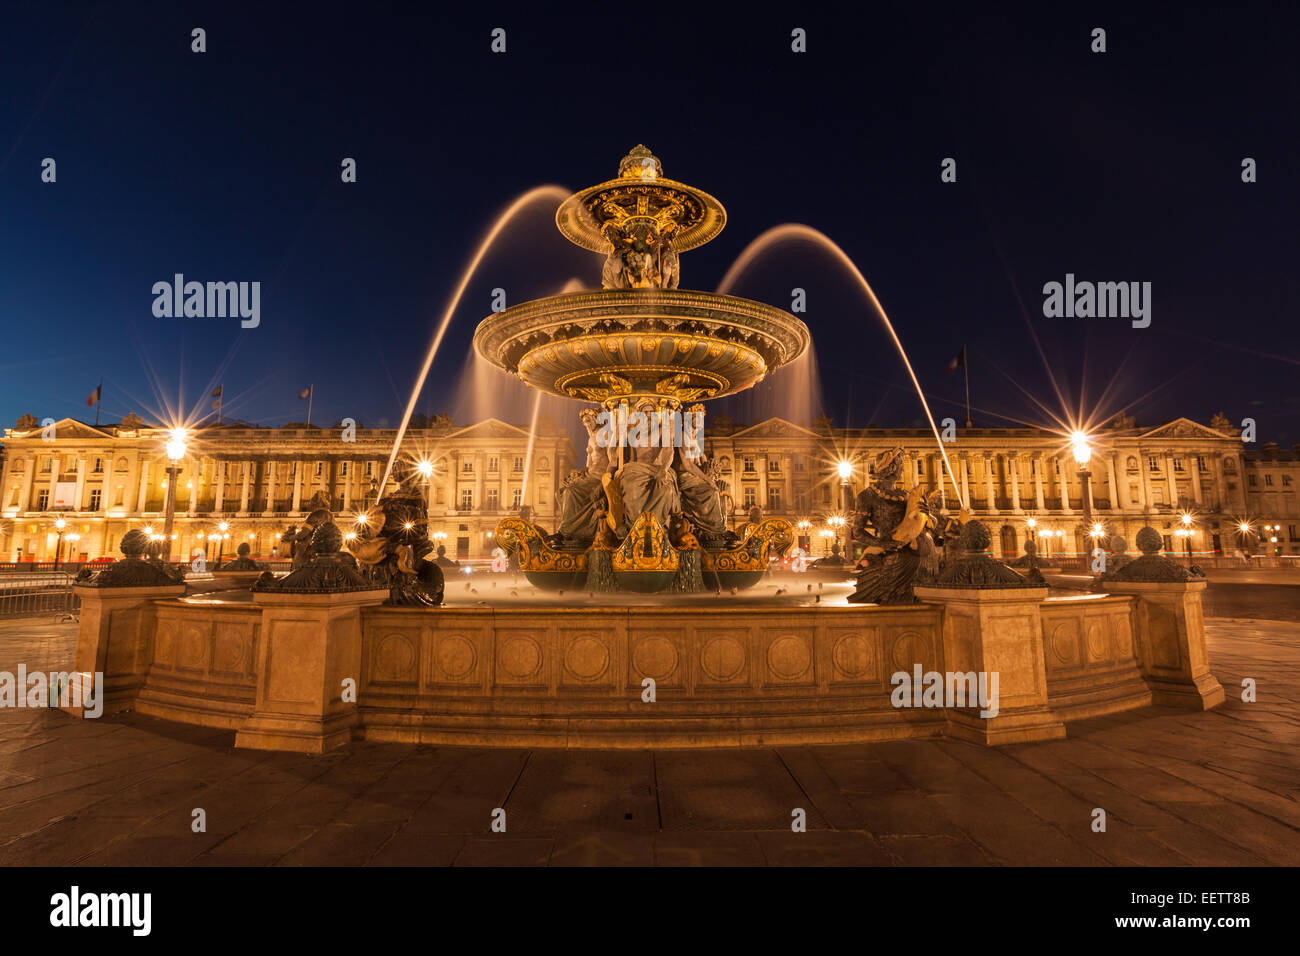 Vue nocturne de la fontaine à la place de la Concorde à Paris France Banque D'Images